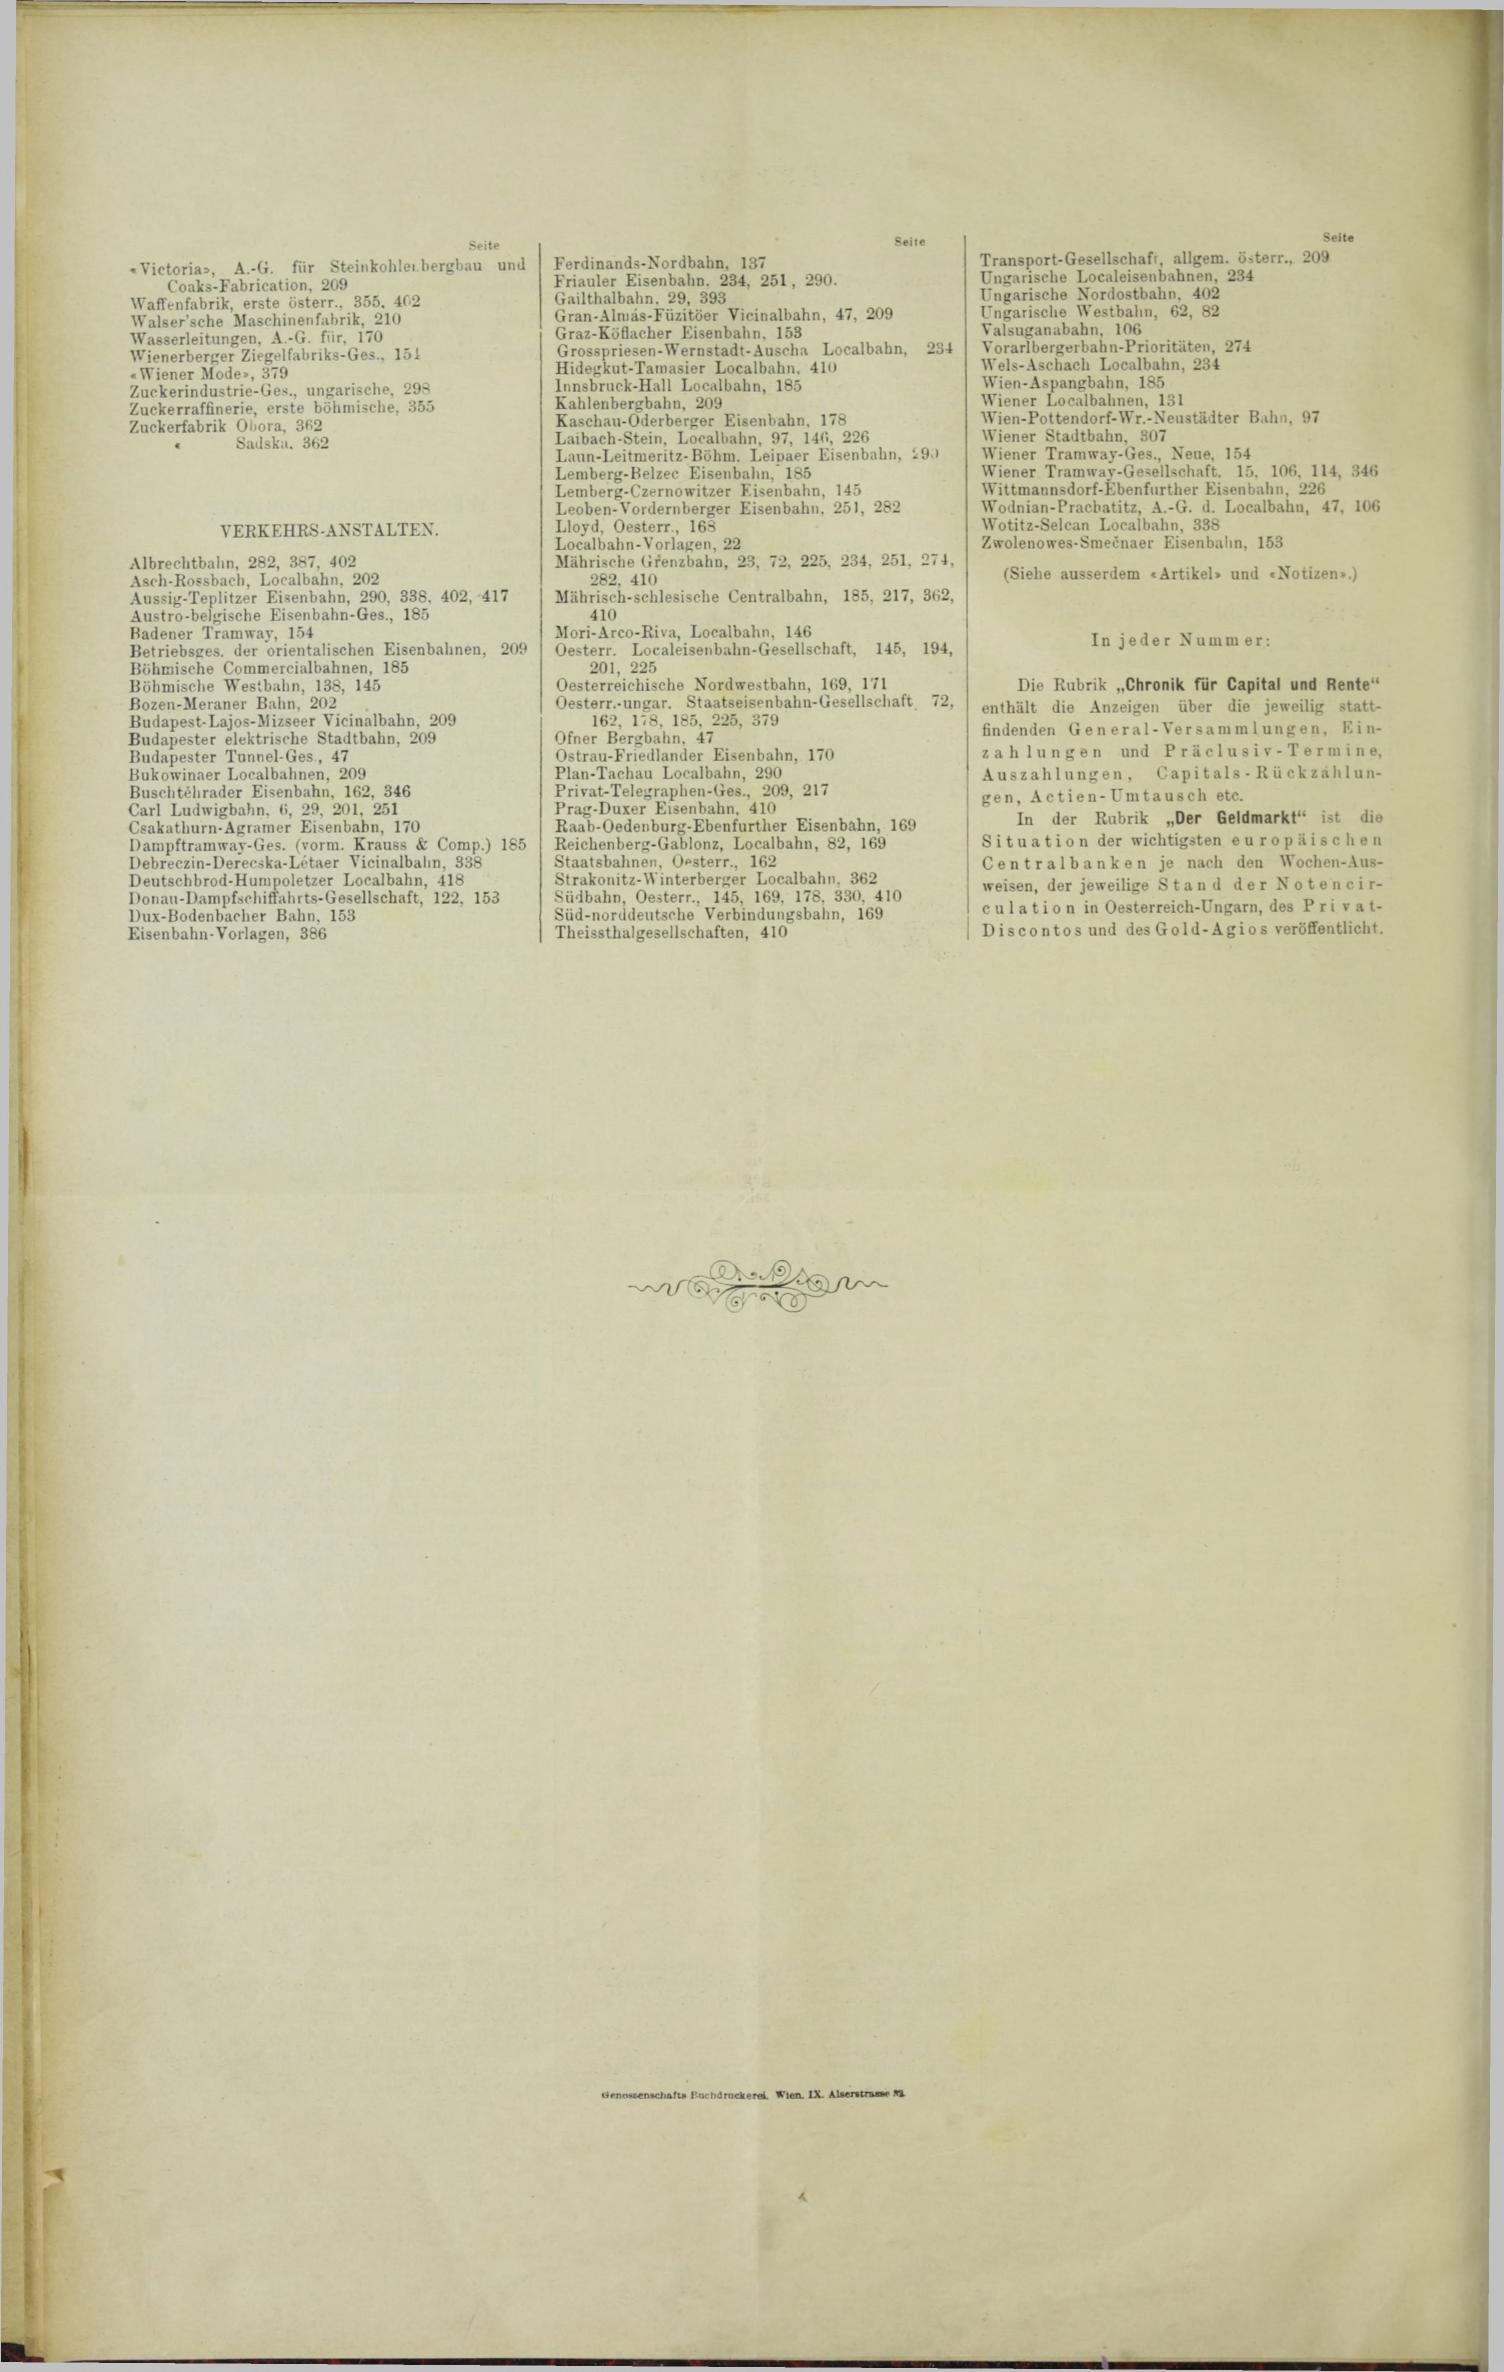 Der Tresor 15.06.1893 - Seite 12